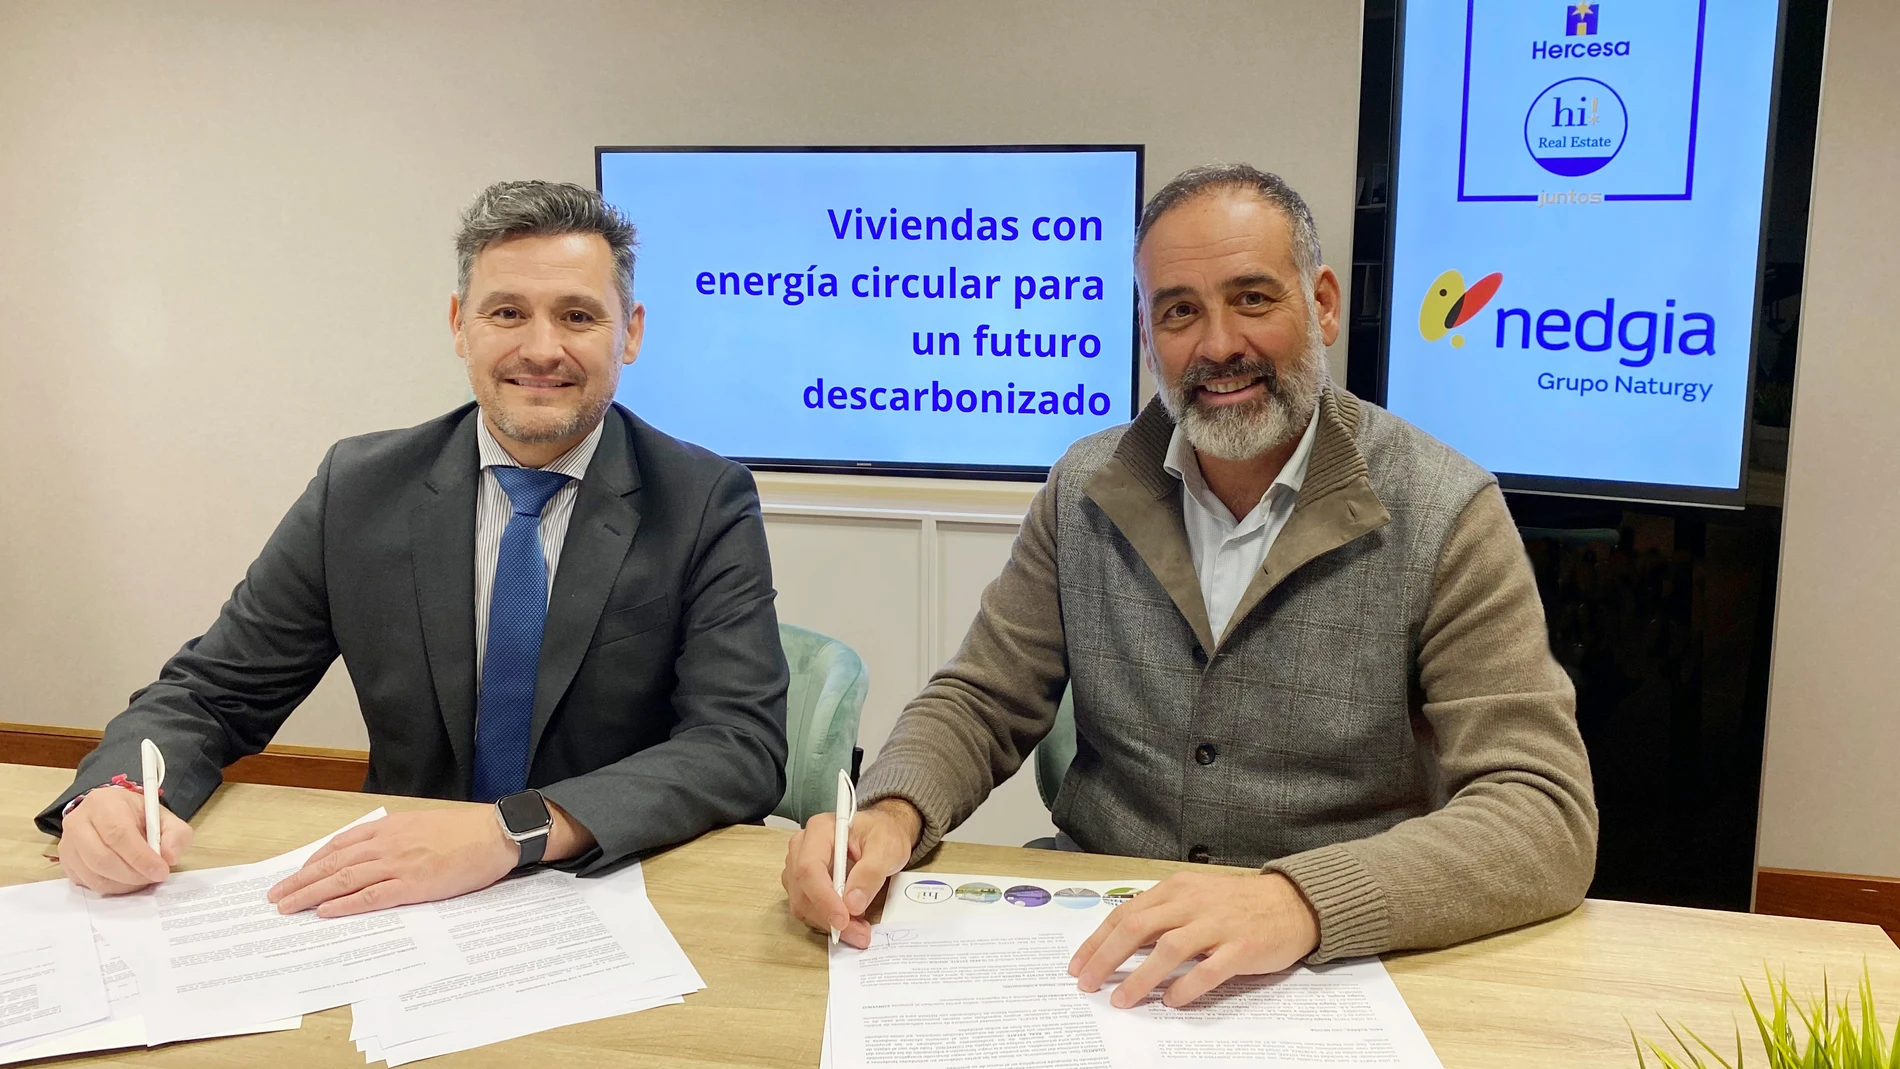 Raúl Suárez, consejero delegado de Nedgia y José Cercadillo de Hercesa | hi! Real Estate durante la firma del acuerdo